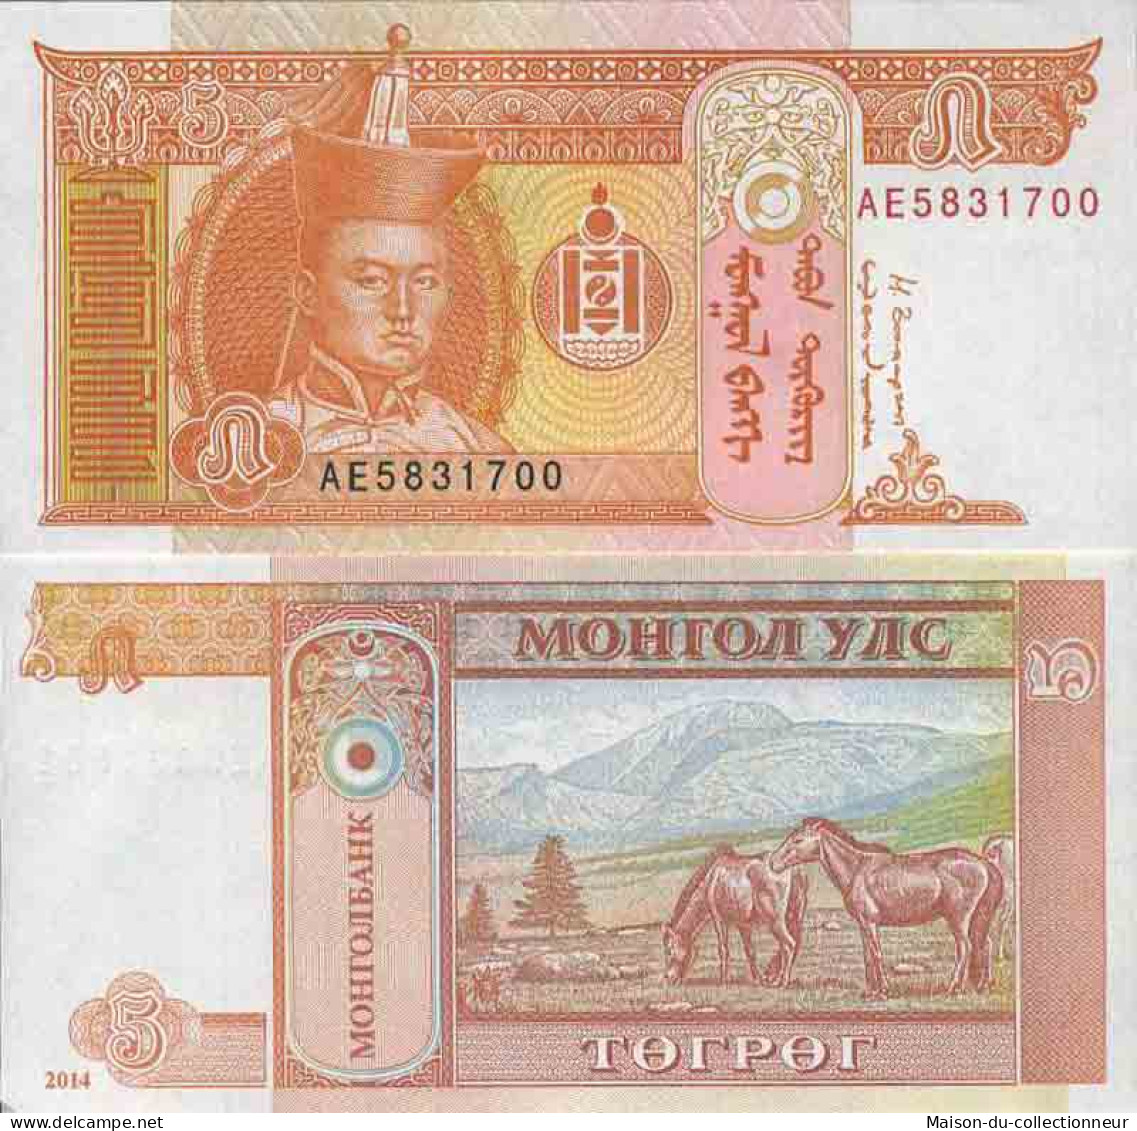 Billet De Banque Collection Mongolie - PK N° 61B - 5 Tugrik - Mongolei